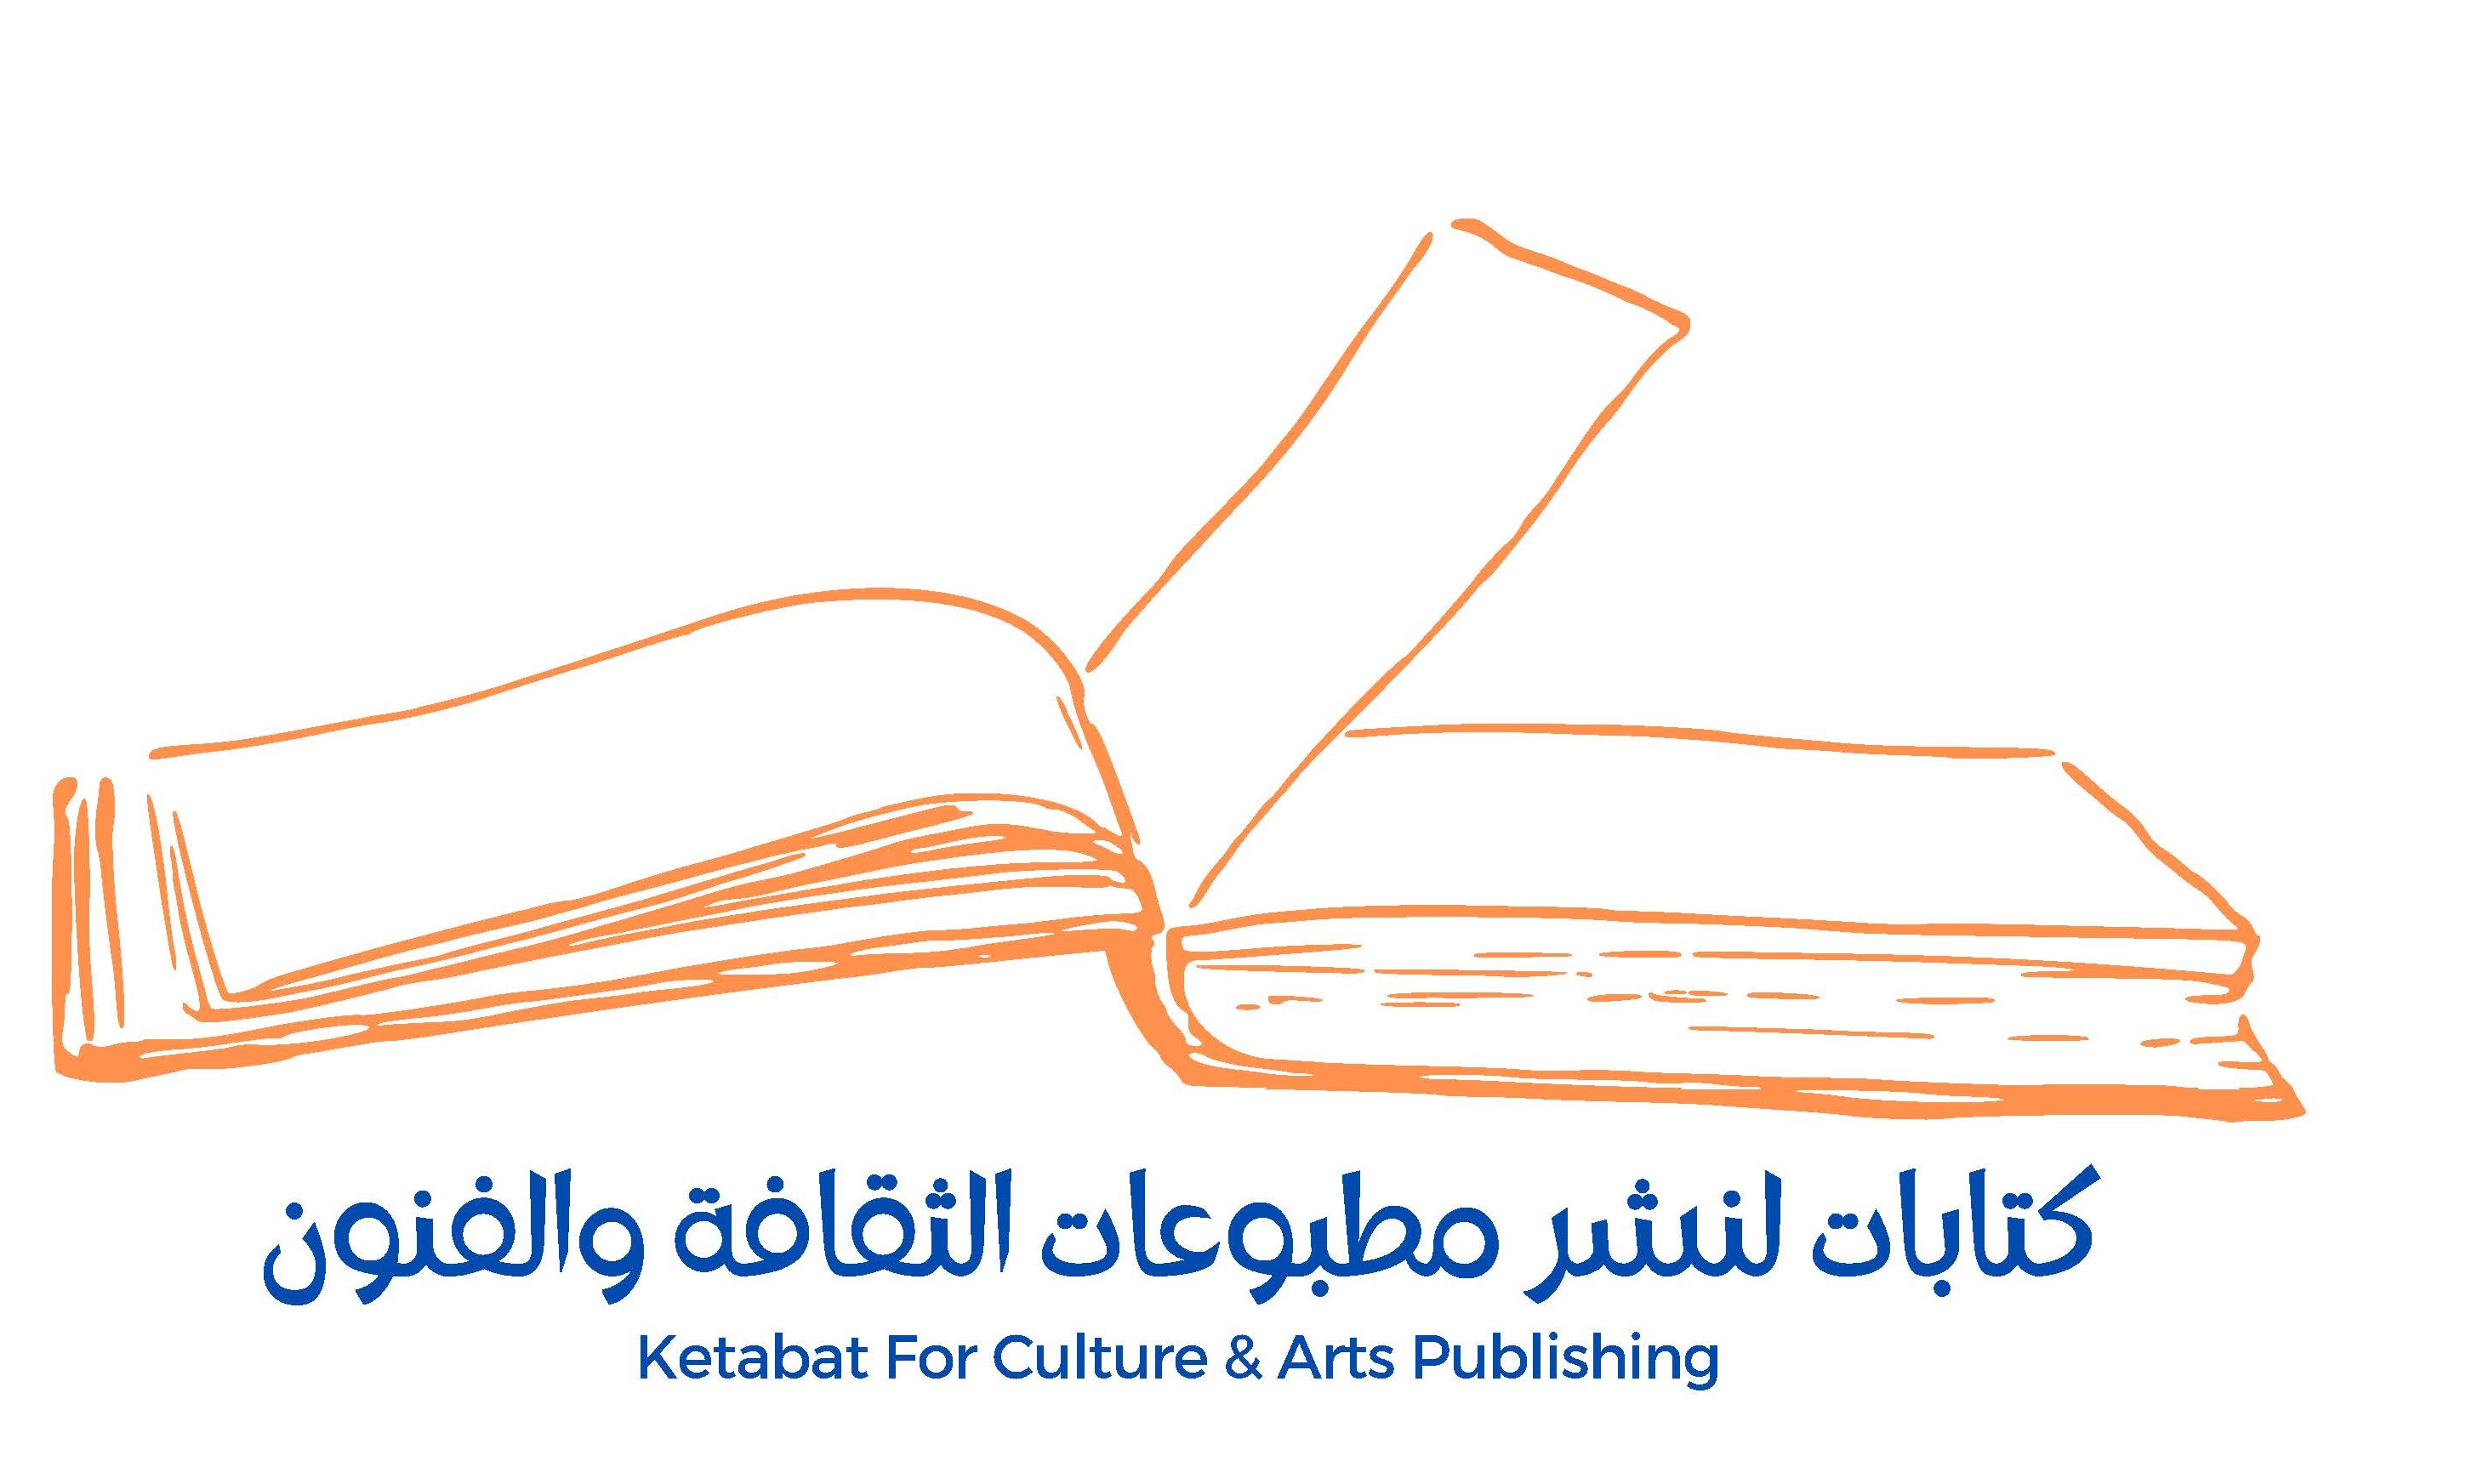 Ketabat for Culture & Arts Publidhing